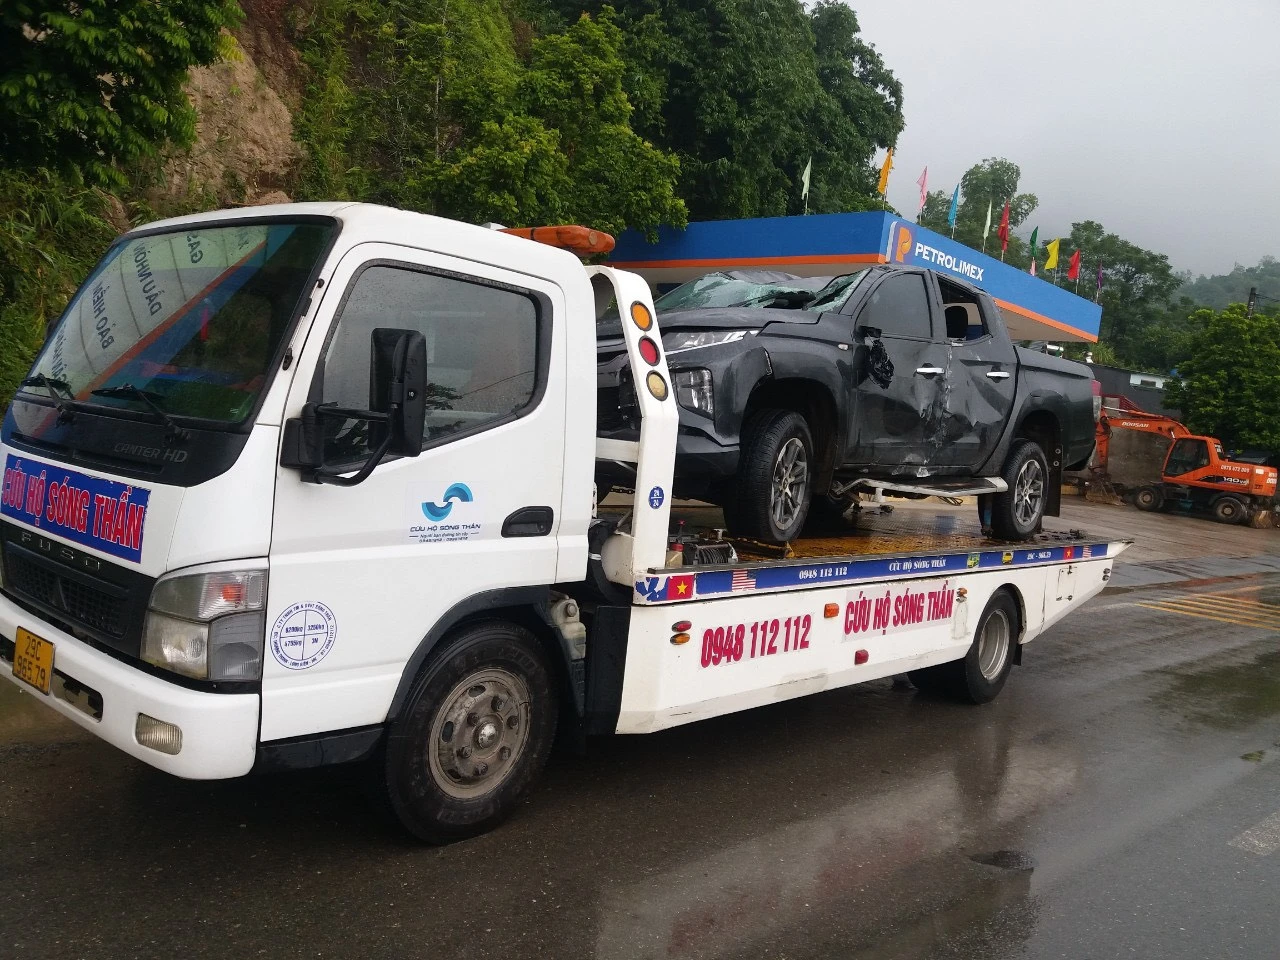 Cứu hộ ô tô, xe kéo, xe cẩu tại Hà Nội | Có mặt sau 5p - 0948.112.112